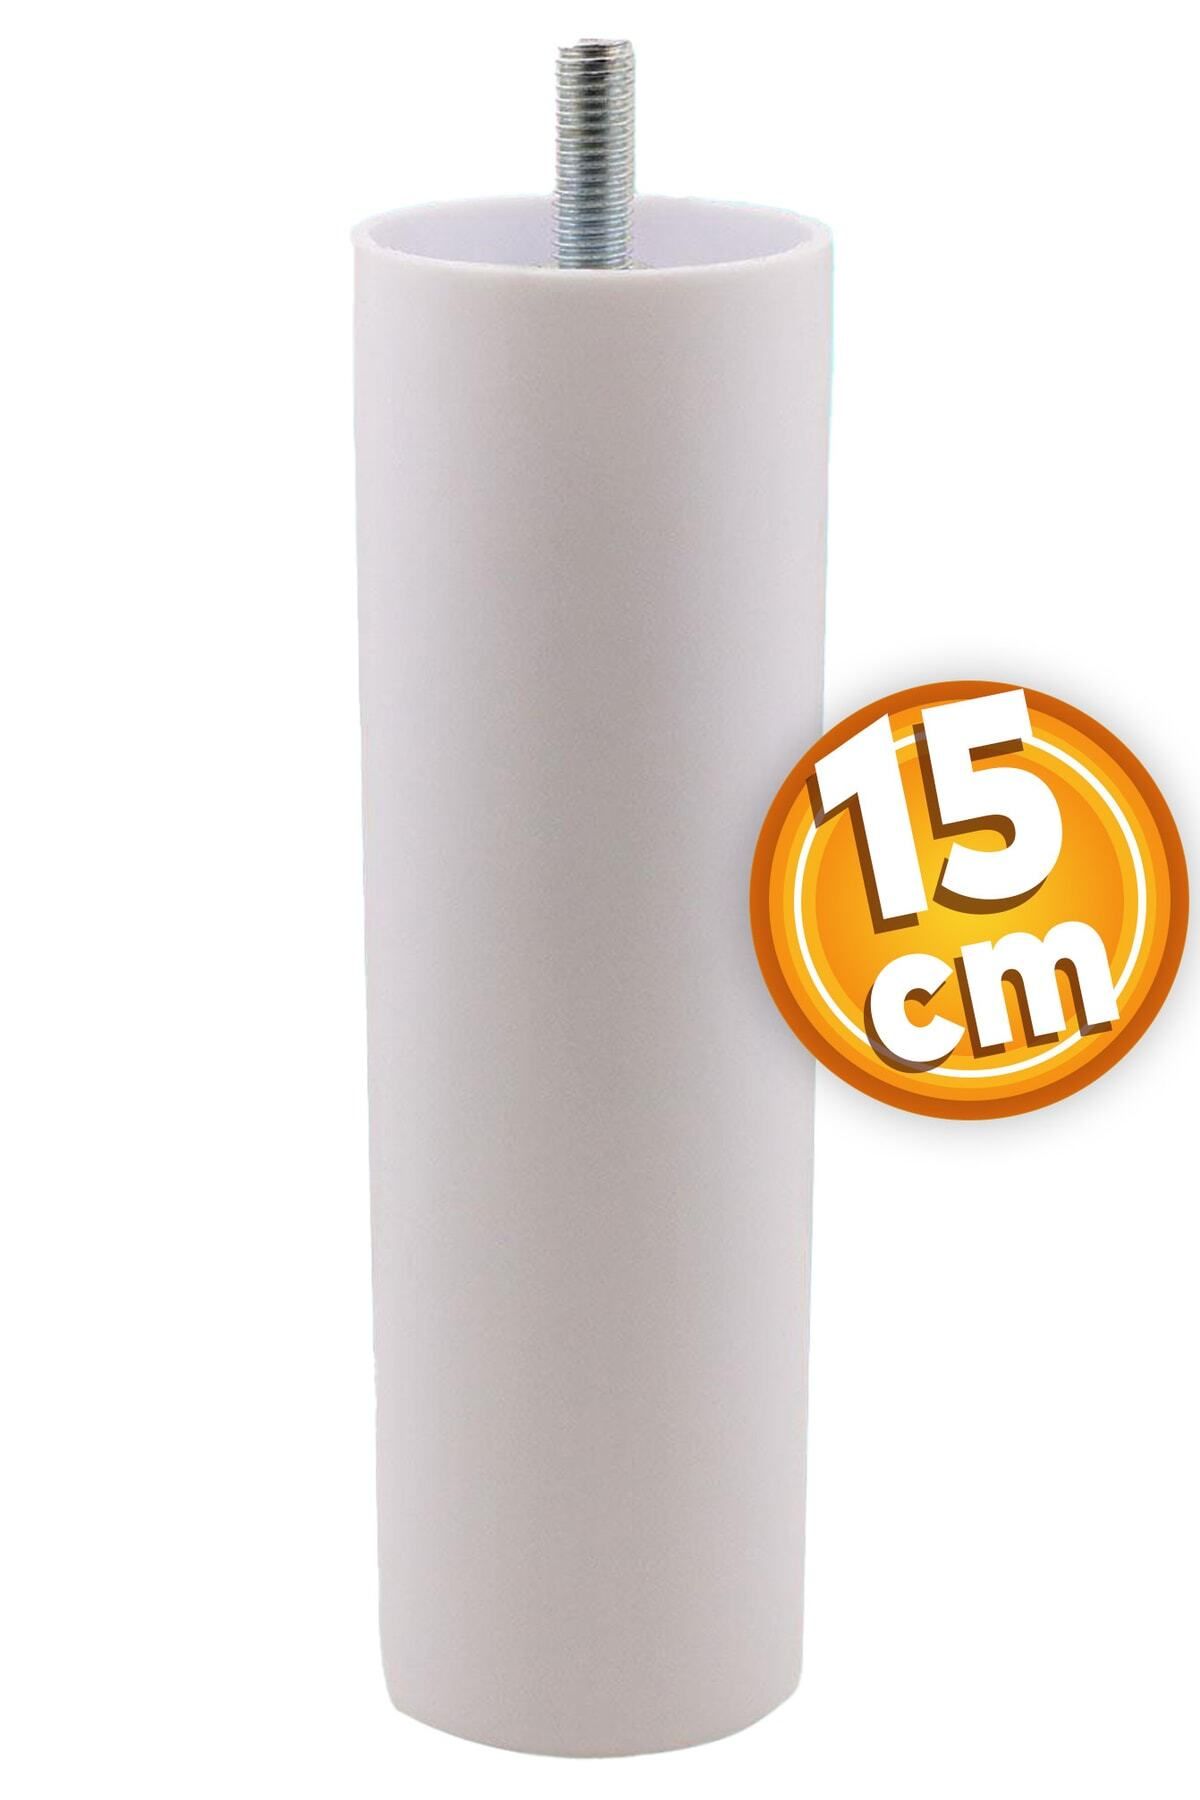 Badem10 Mobilya Kanepe Koltuk Baza Yükseltici Yükseltme M8 Civatalı Vidalı Orta Destek Ayağı Ayak Beyaz 15cm